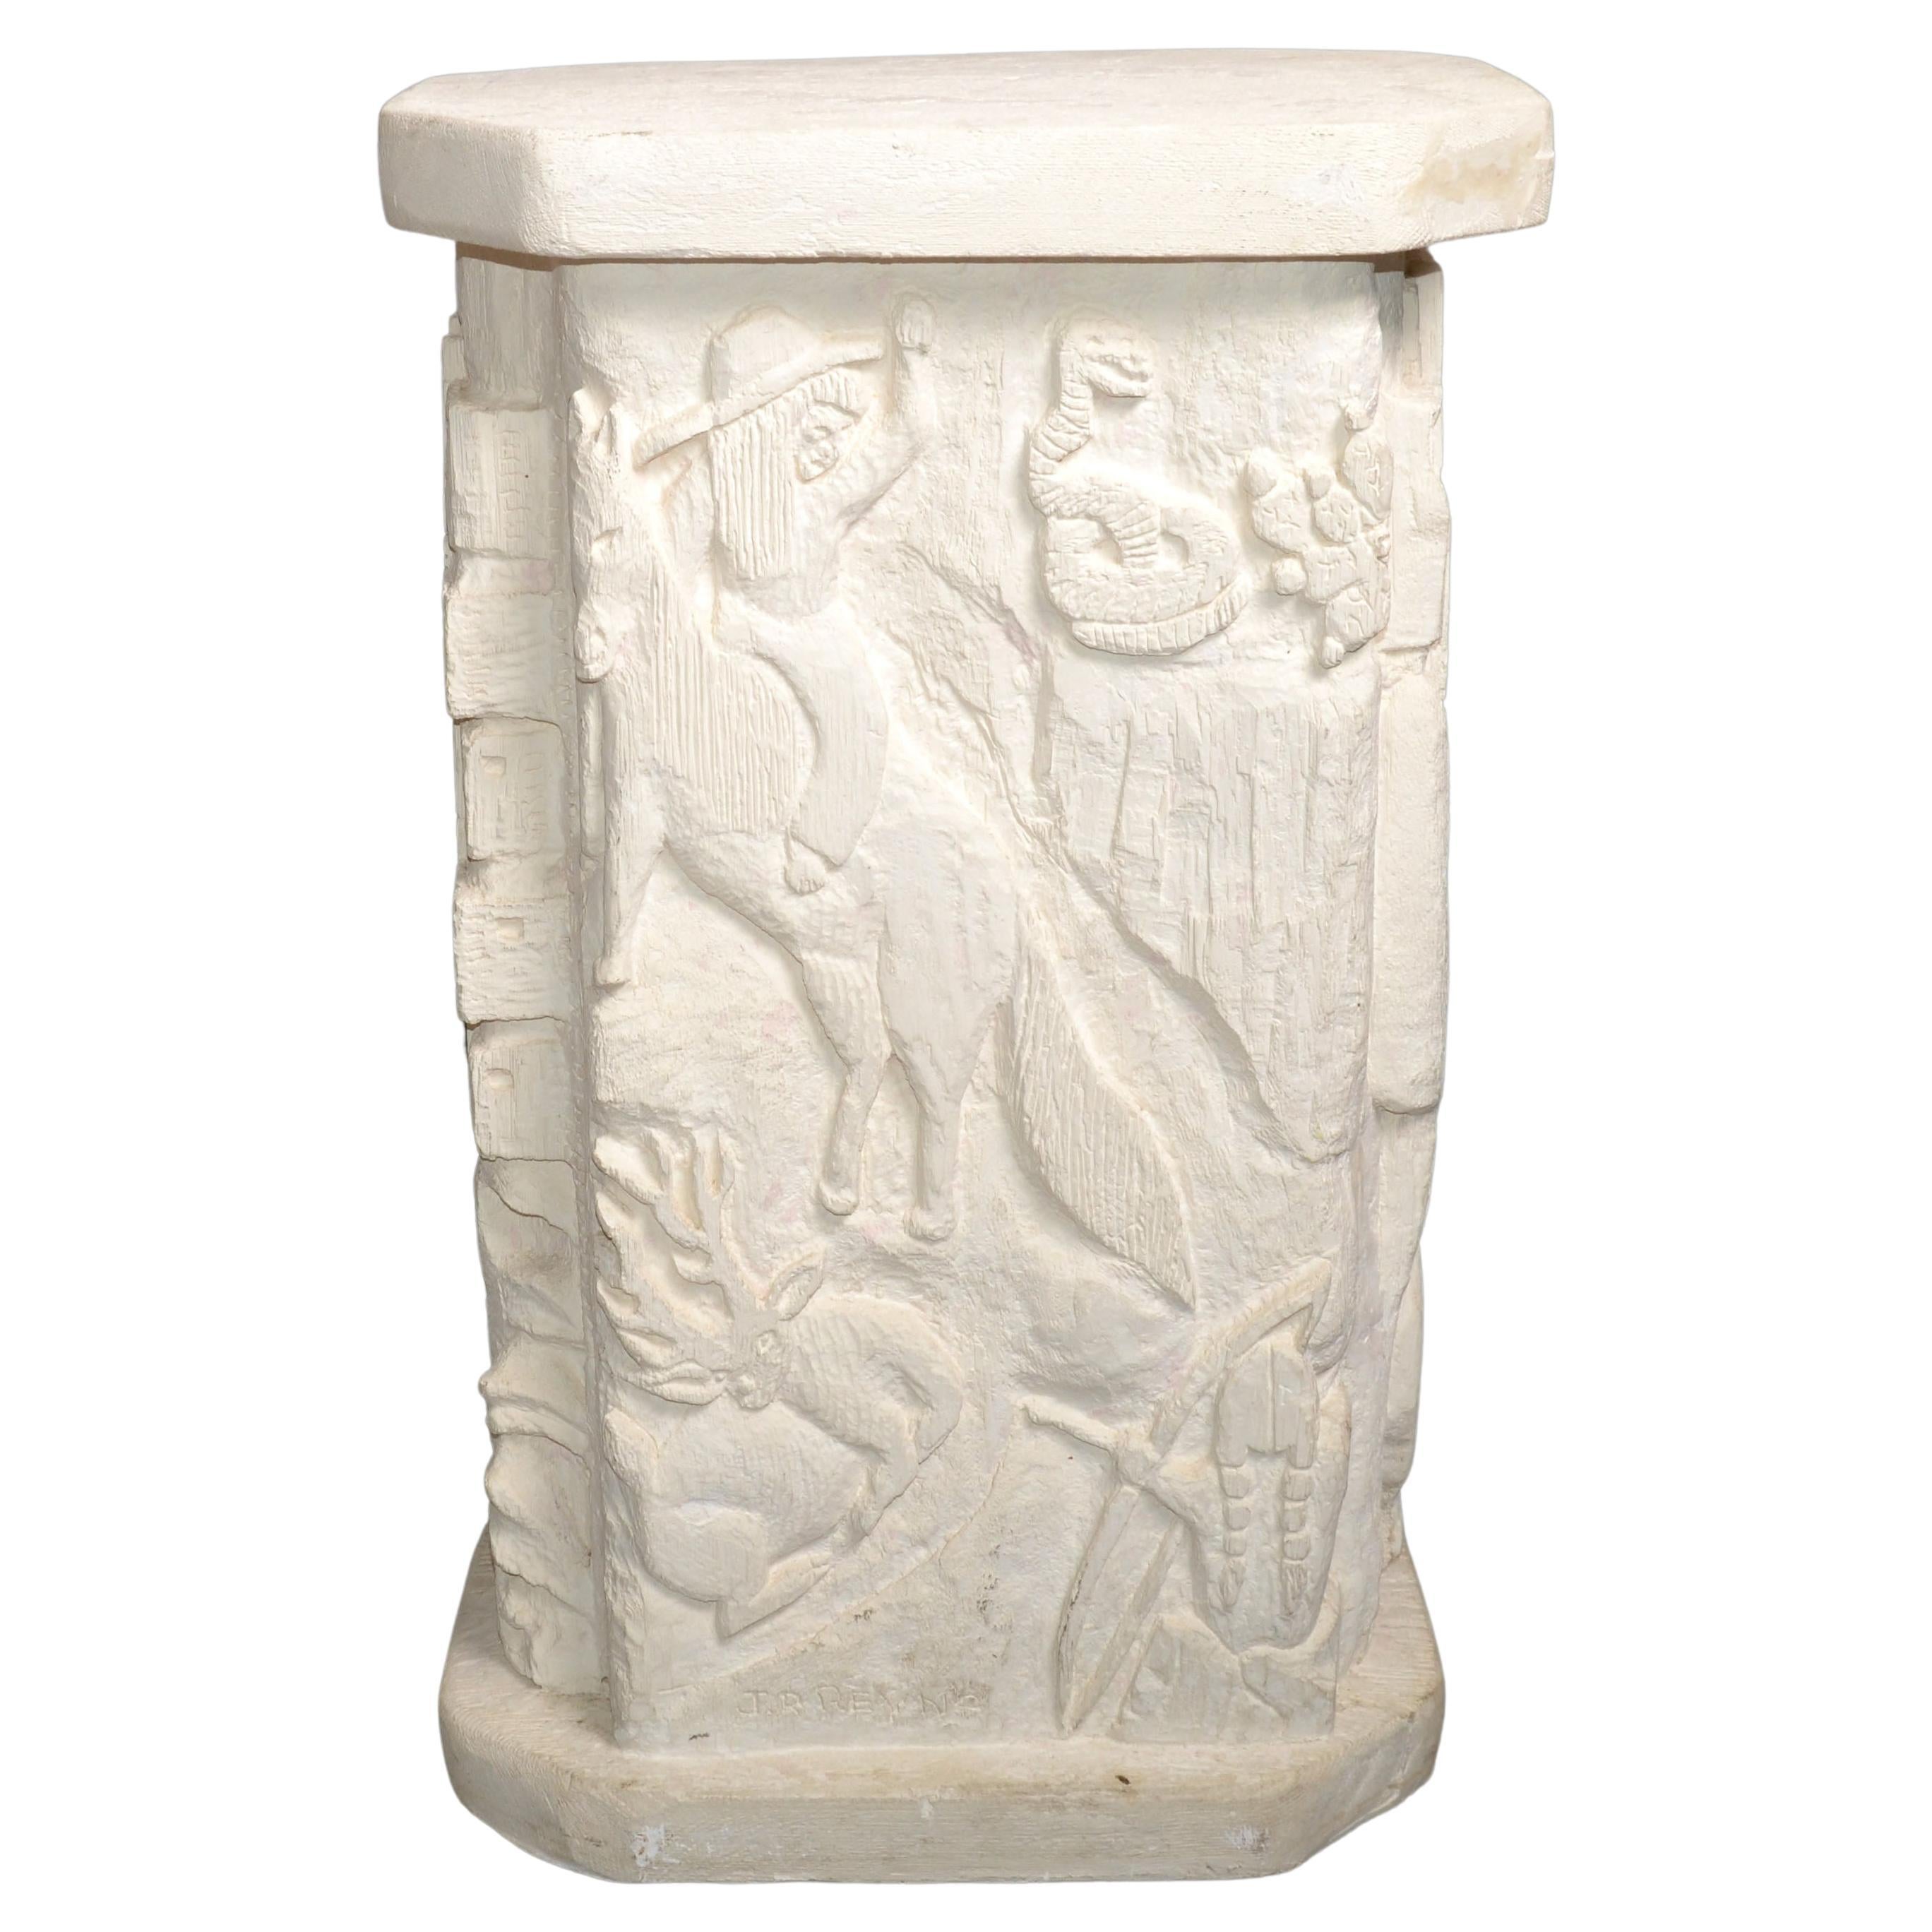 Signed Southwestern Folk Art Carved Sculptural Plaster Pedestal Column Table 80s For Sale